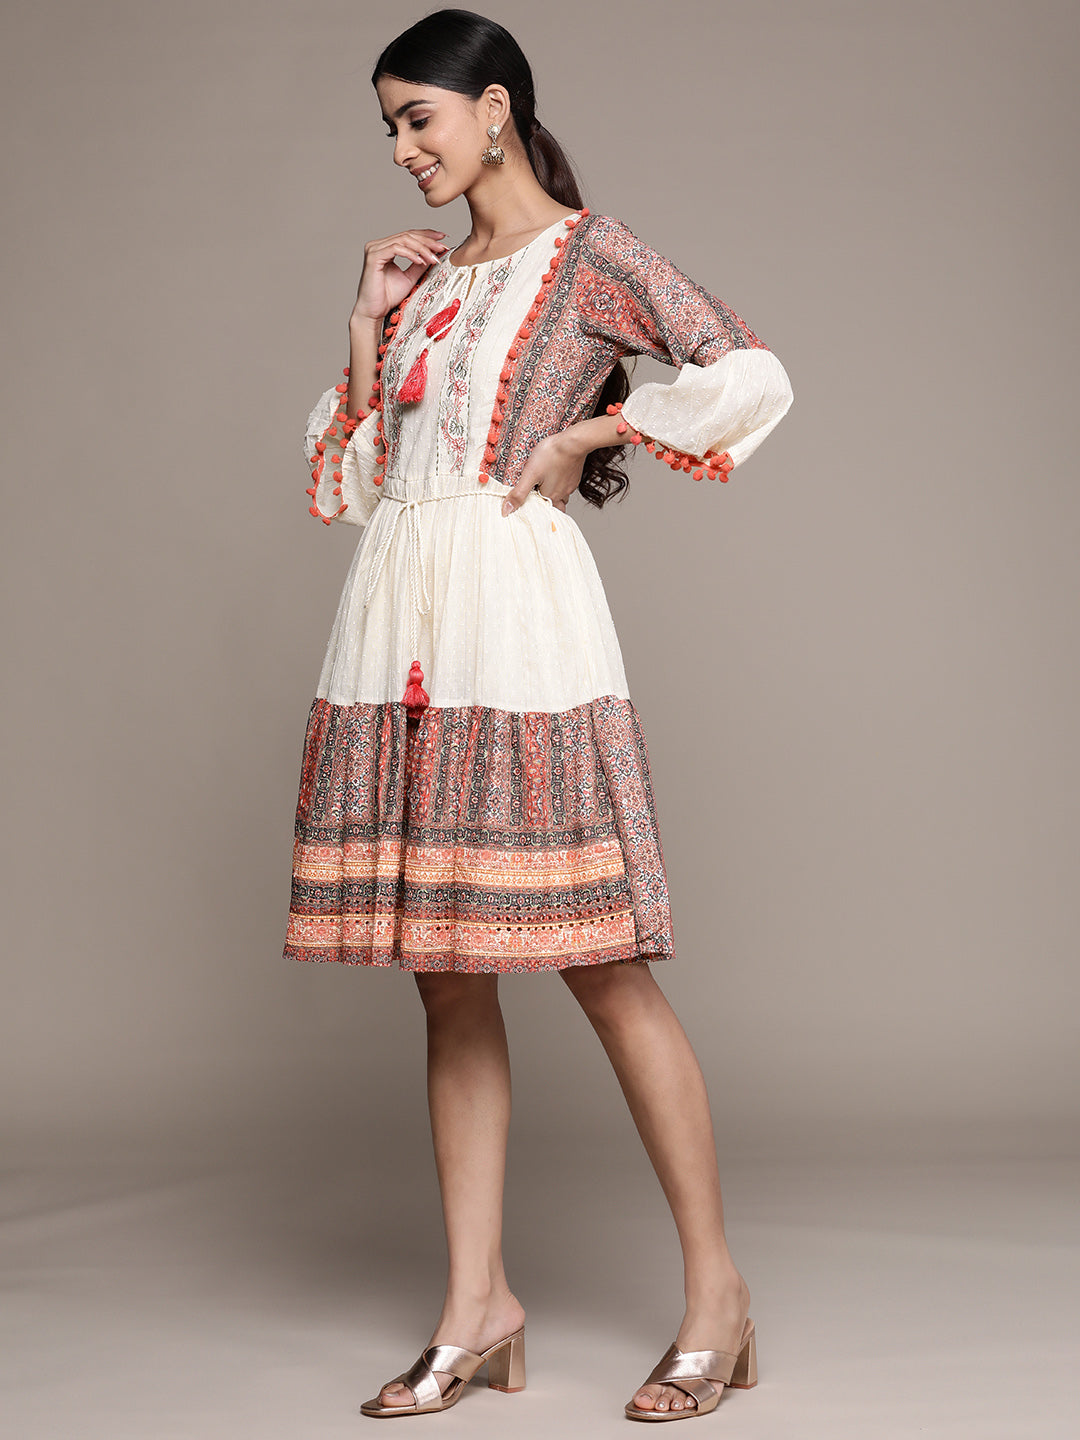 Ishin Women's Cotton Cream & Multicolored Embroidered A-Line Dress